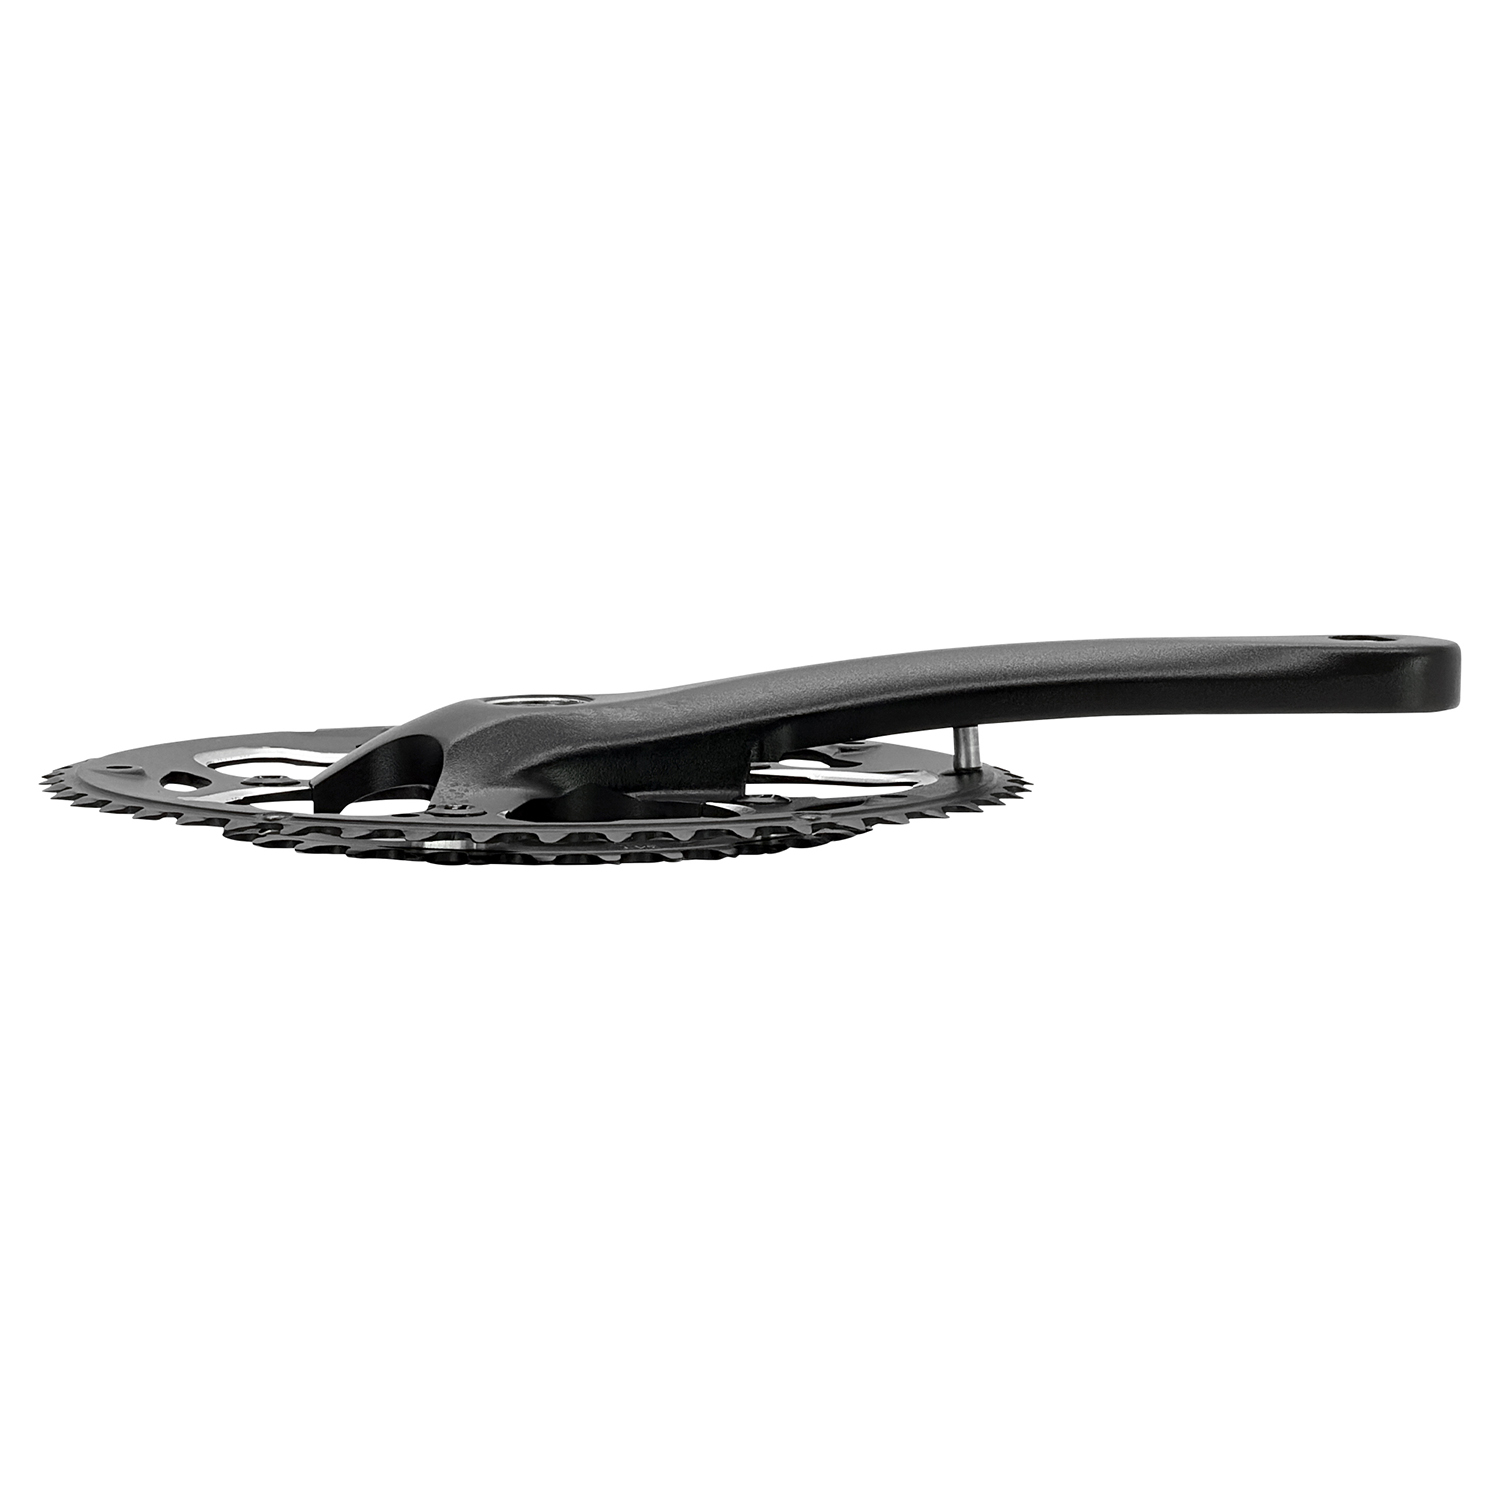 Kettenradgarnitur aus ALU 2 fach 34/50 Zähne 172,5 mm in schwarz